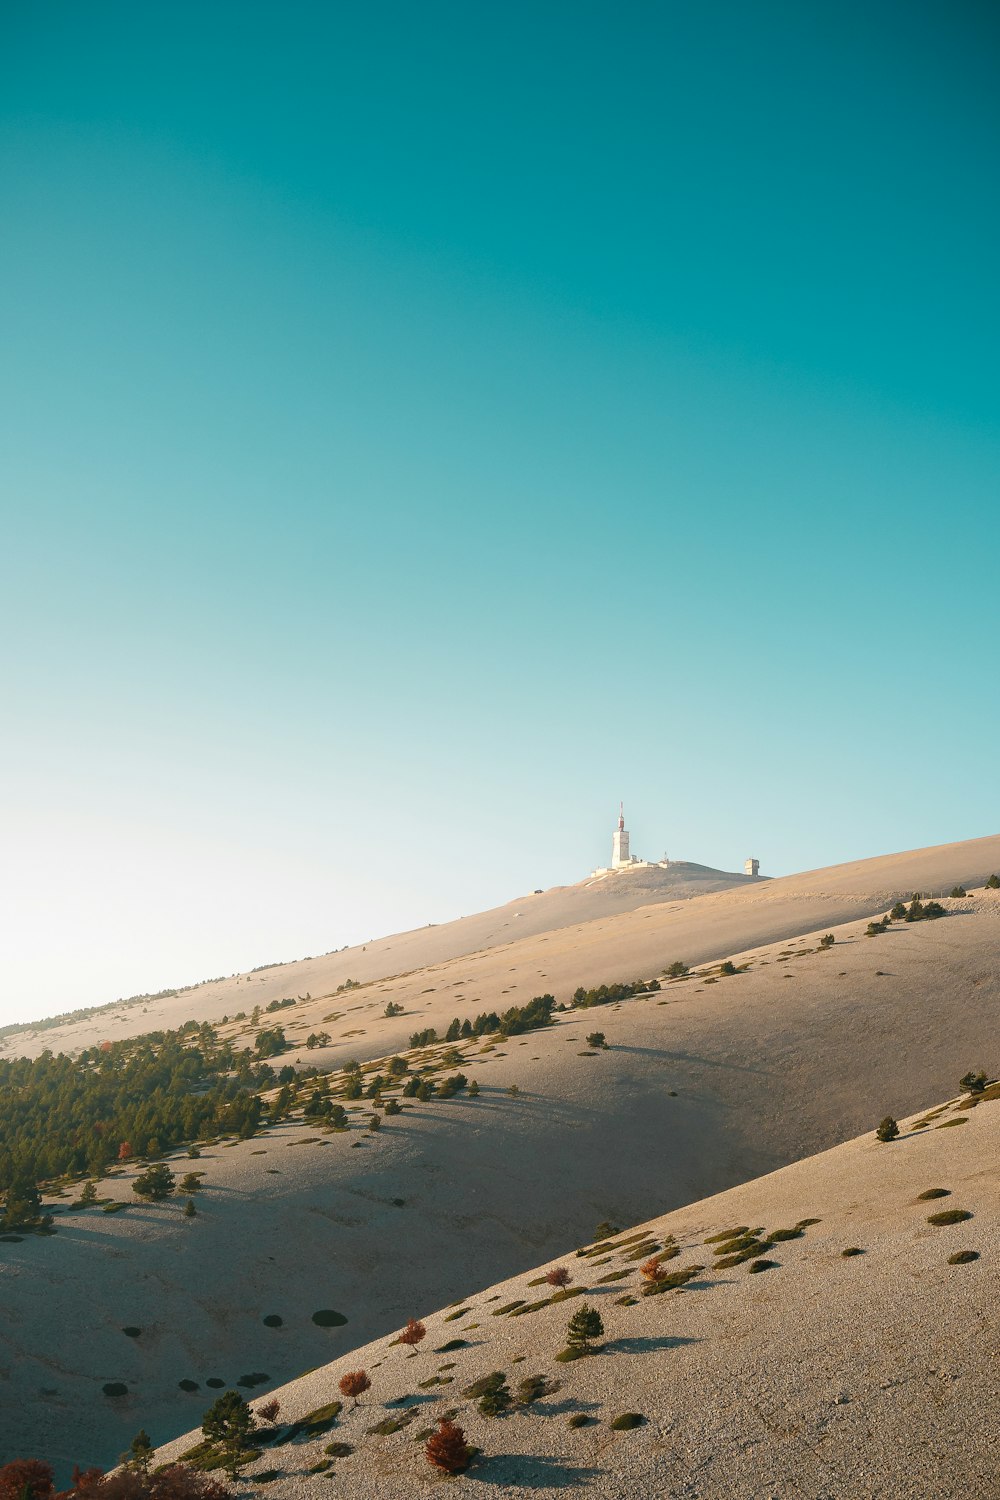 Ein weißer Leuchtturm auf einem Hügel in der Wüste